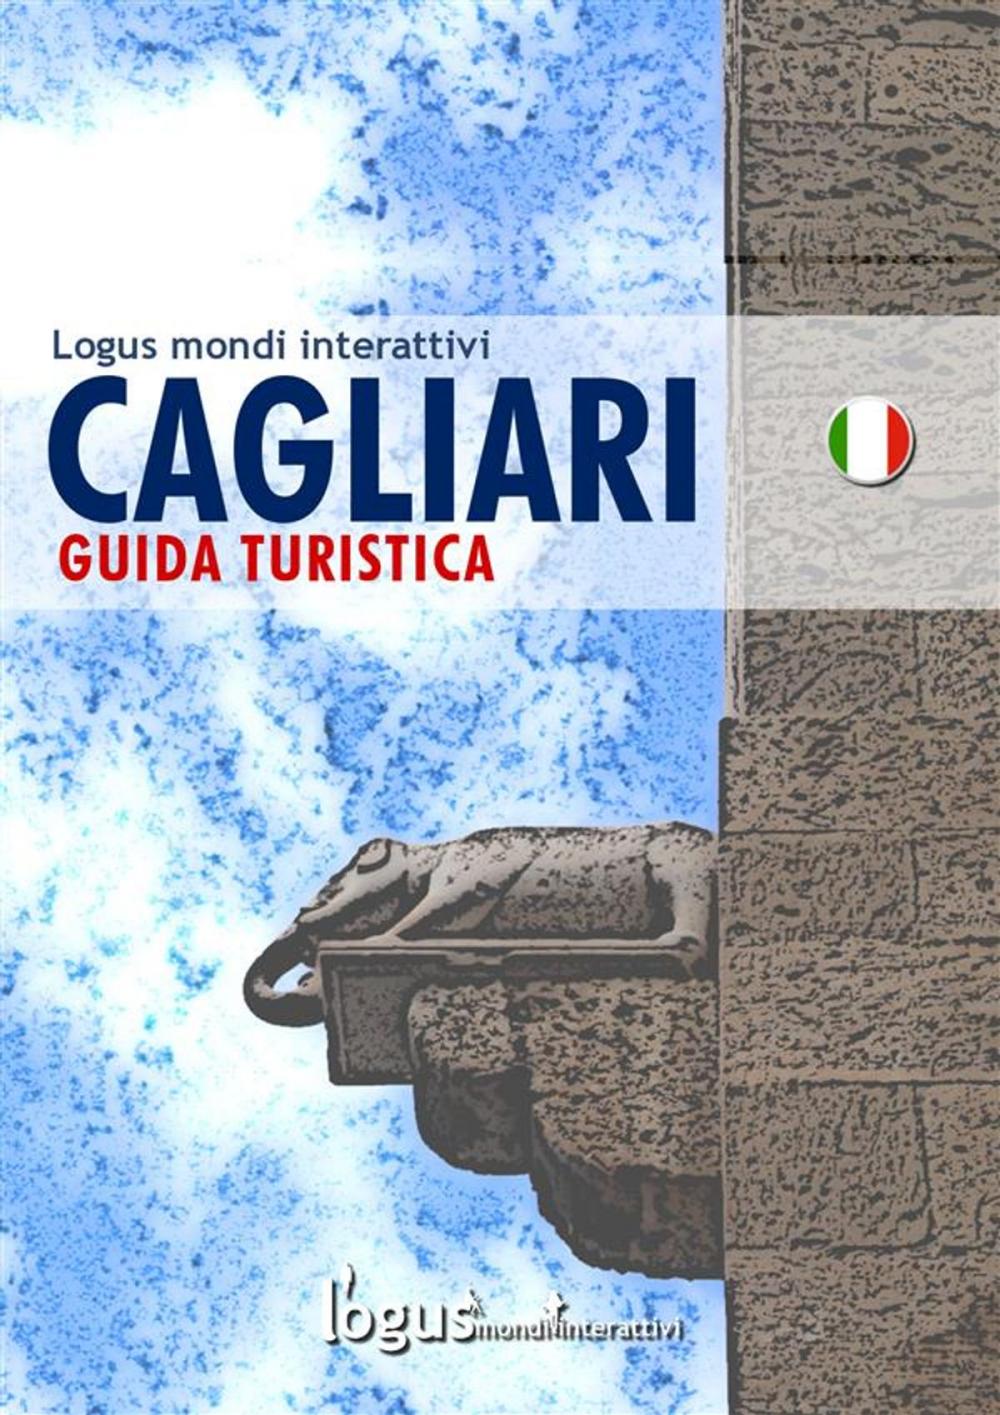 Big bigCover of Cagliari - Guida turistica